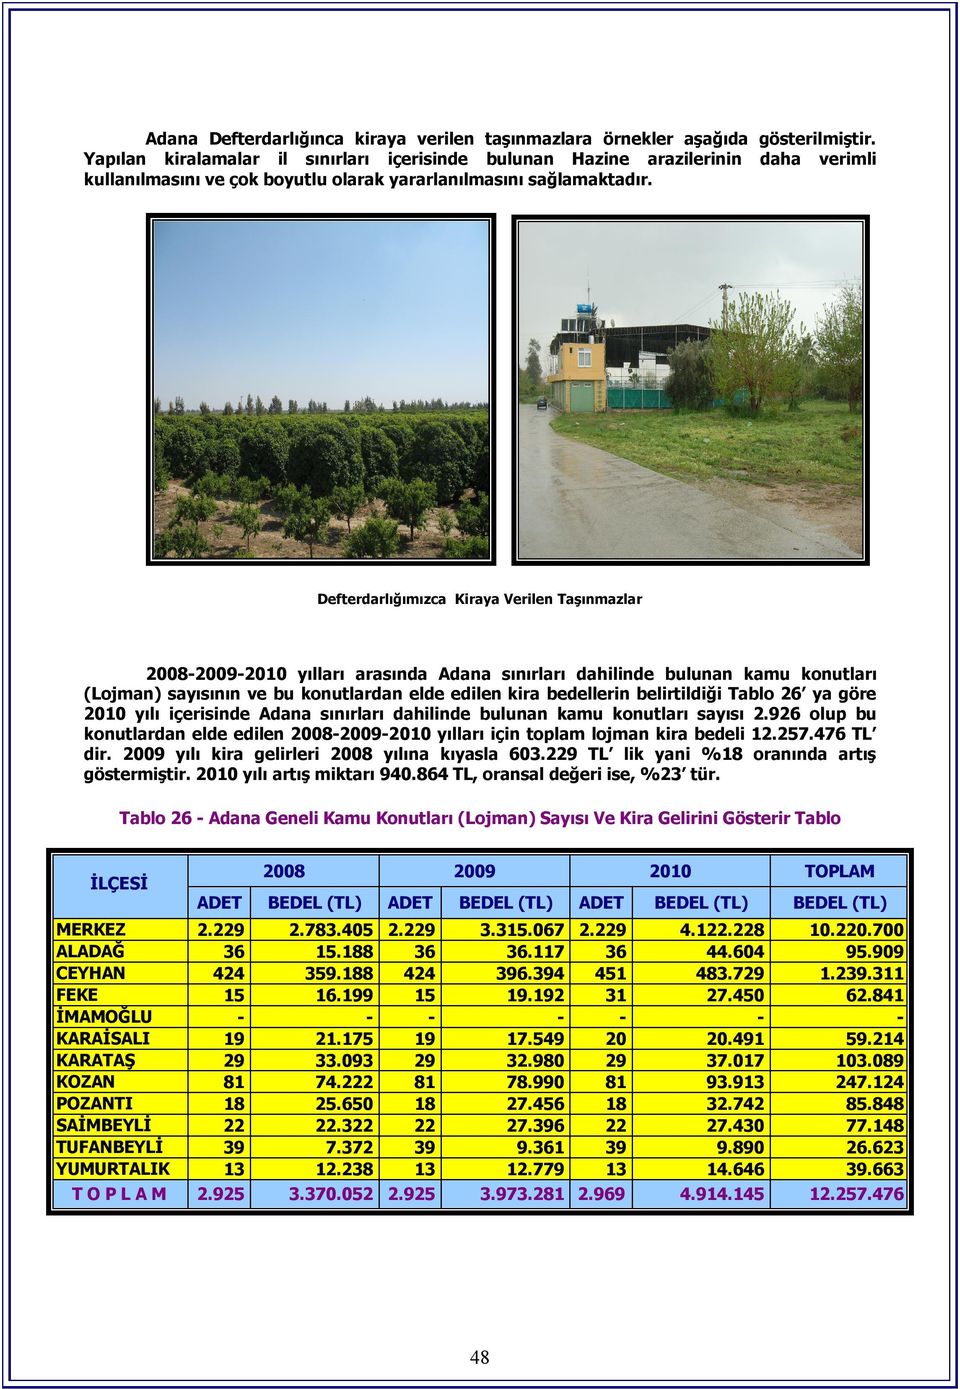 Defterdarlığımızca Kiraya Verilen Taşınmazlar 2008-2009-2010 yılları arasında Adana sınırları dahilinde bulunan kamu konutları (Lojman) sayısının ve bu konutlardan elde edilen kira bedellerin